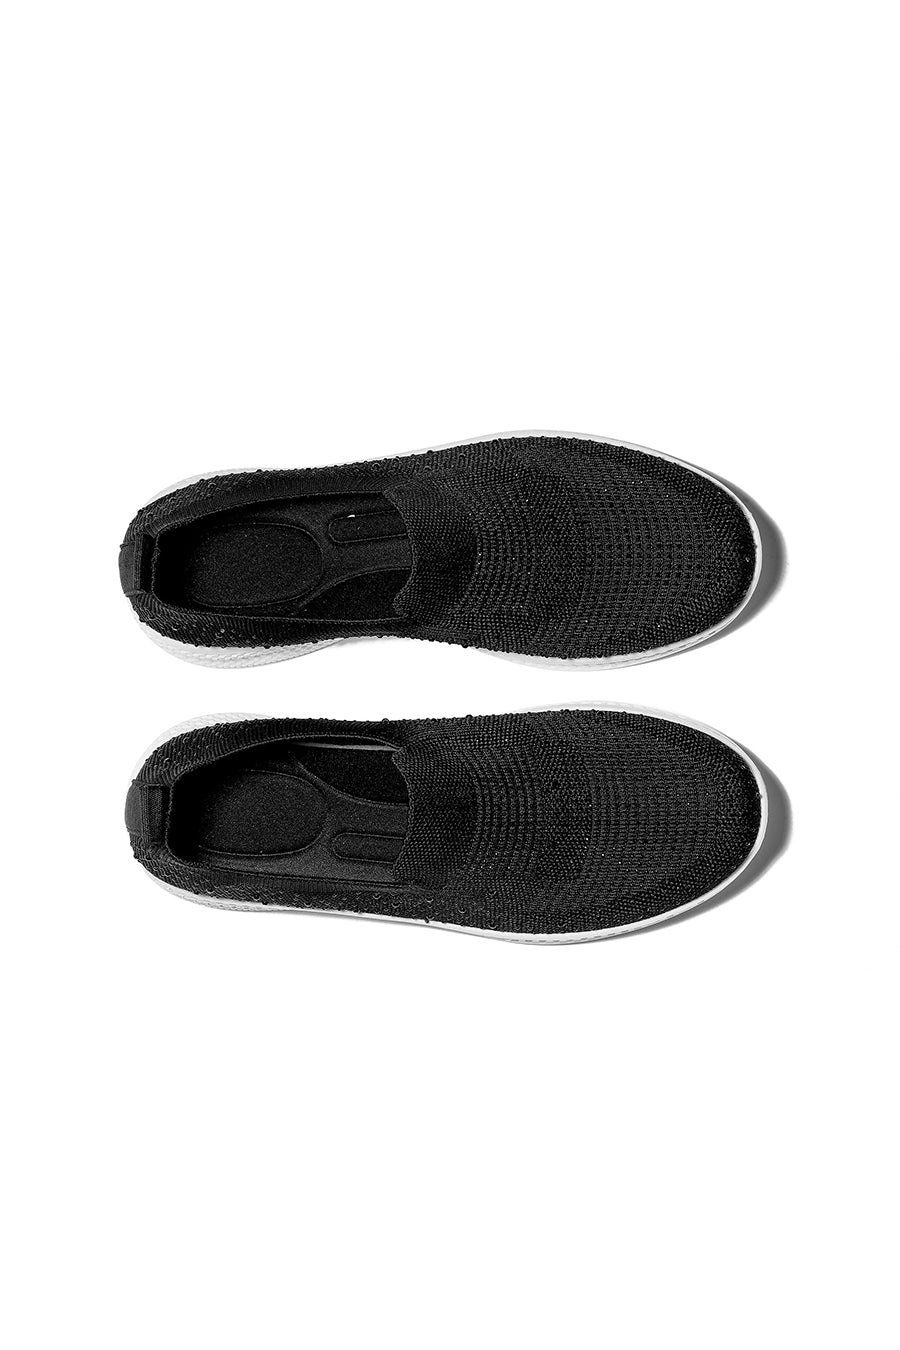 JOMIX Scarpe Donna Senza Lacci Sneakers Casual Eleganti da Camminata SD9135